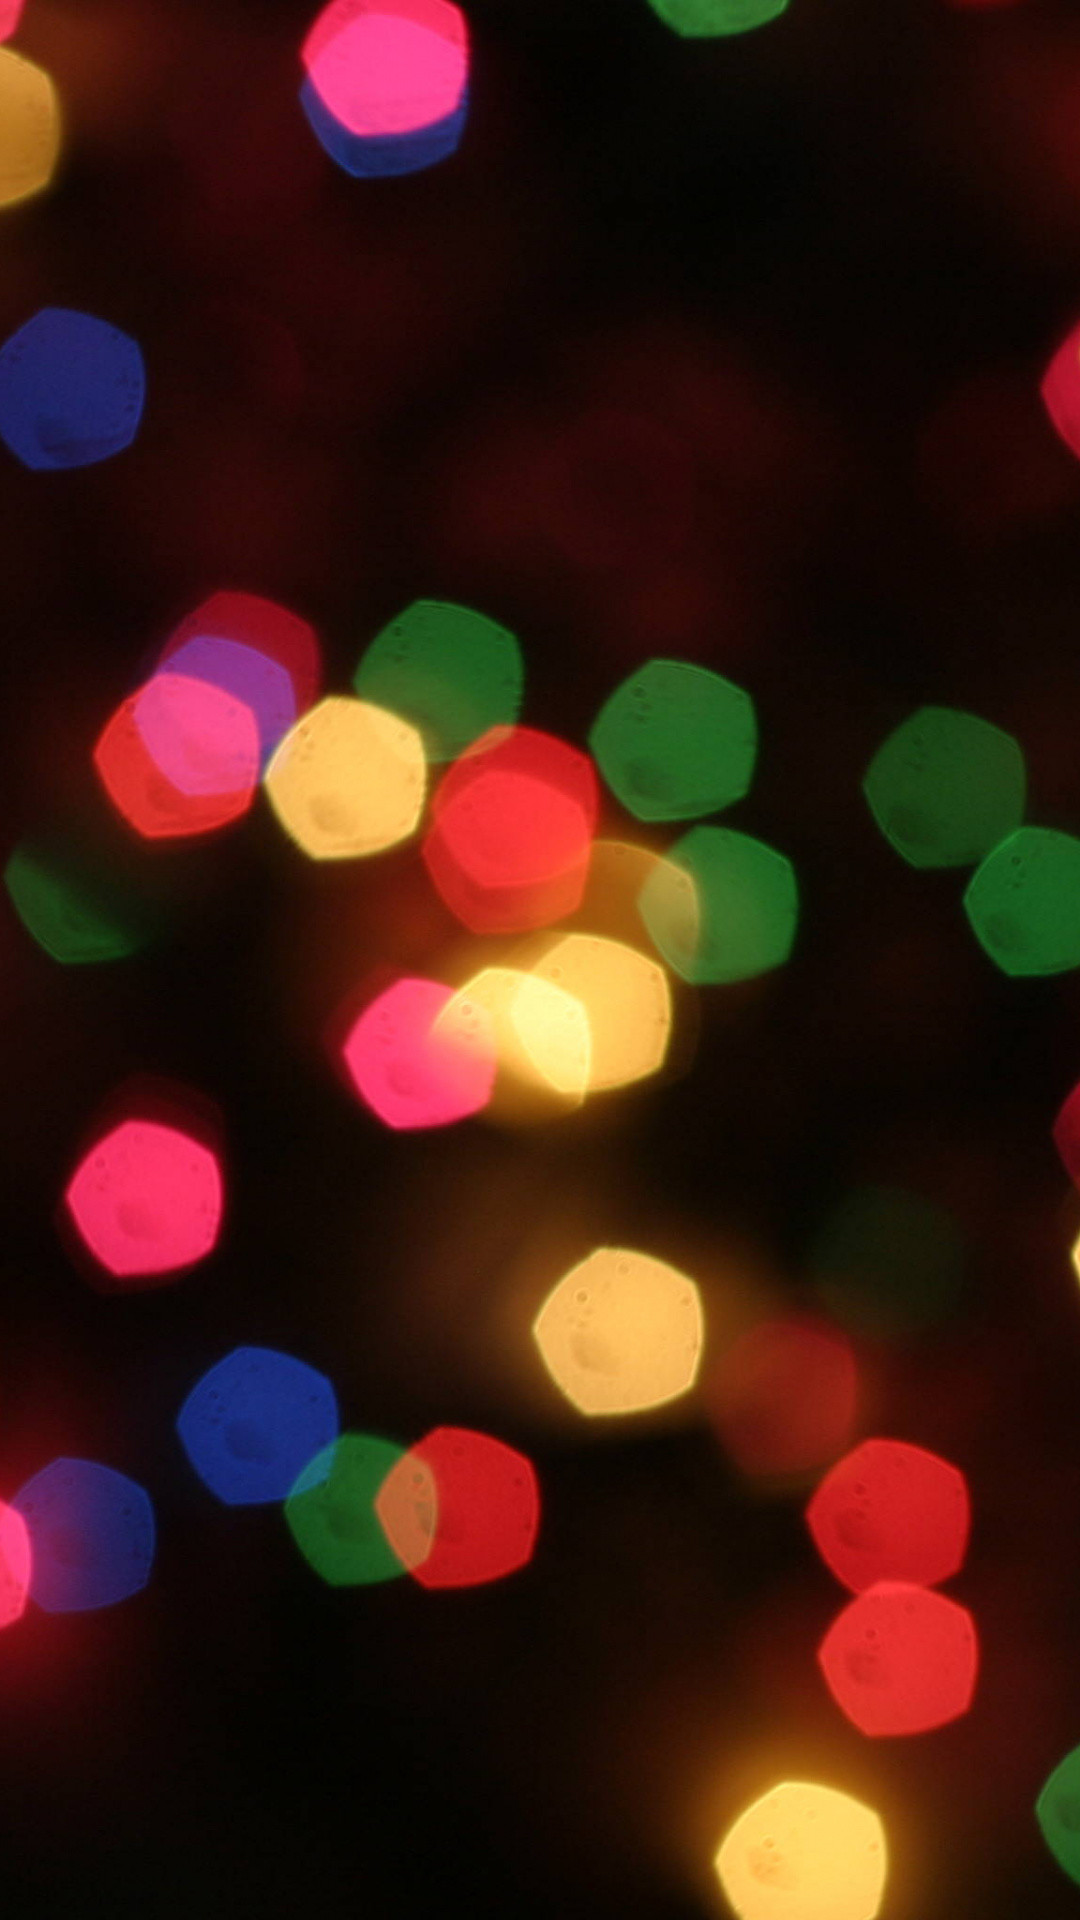 1080x1920 Bokeh, Lighting, Light, Decor, Christmas Lights IPhone 6S+/7+/8+ Wallpaper  in 